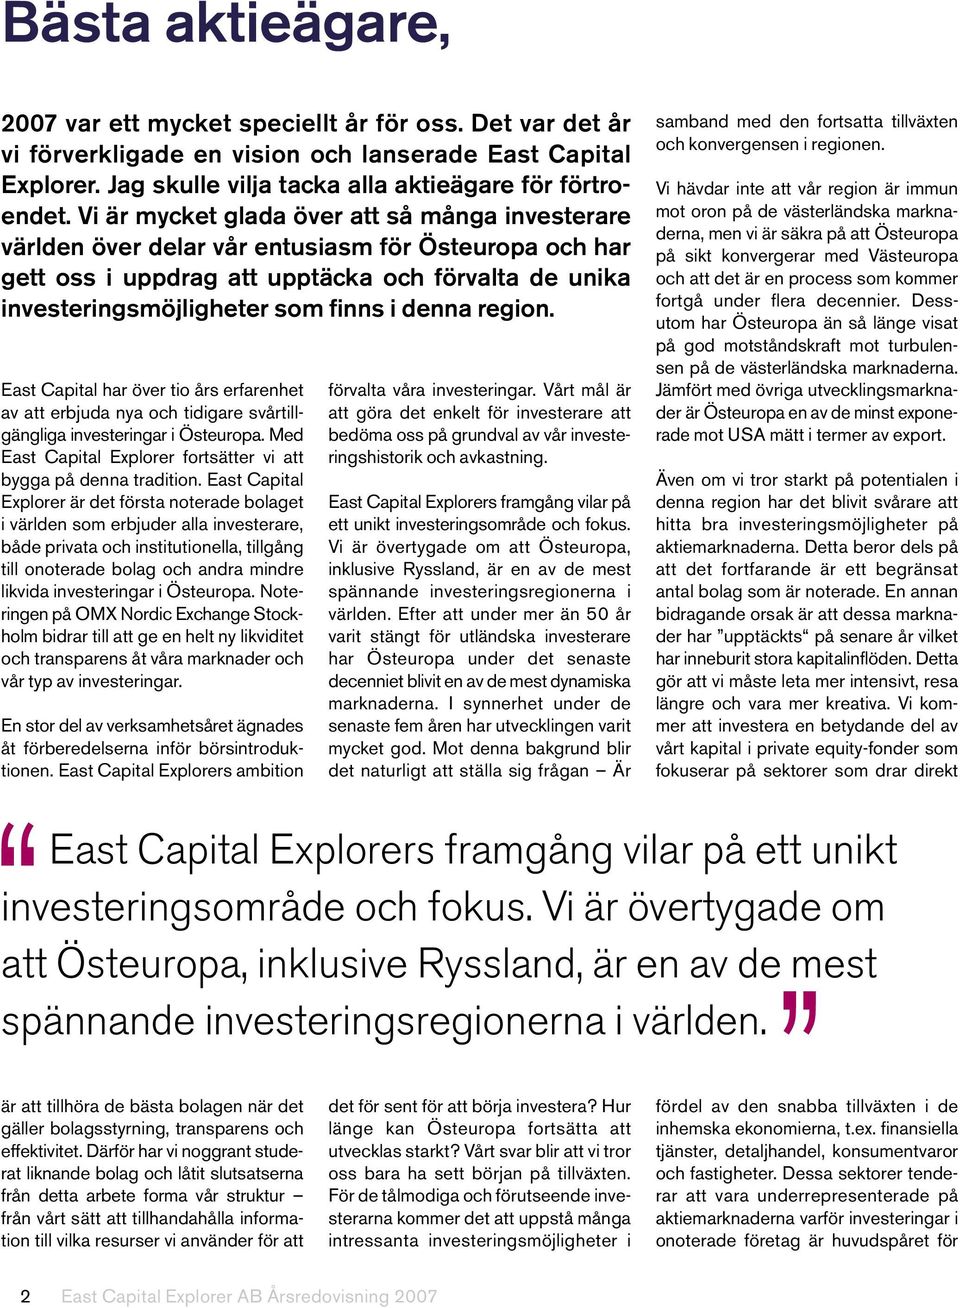 region. East Capital har över tio års erfarenhet av att erbjuda nya och tidigare svårtillgängliga investeringar i Östeuropa. Med East Capital Explorer fortsätter vi att bygga på denna tradition.